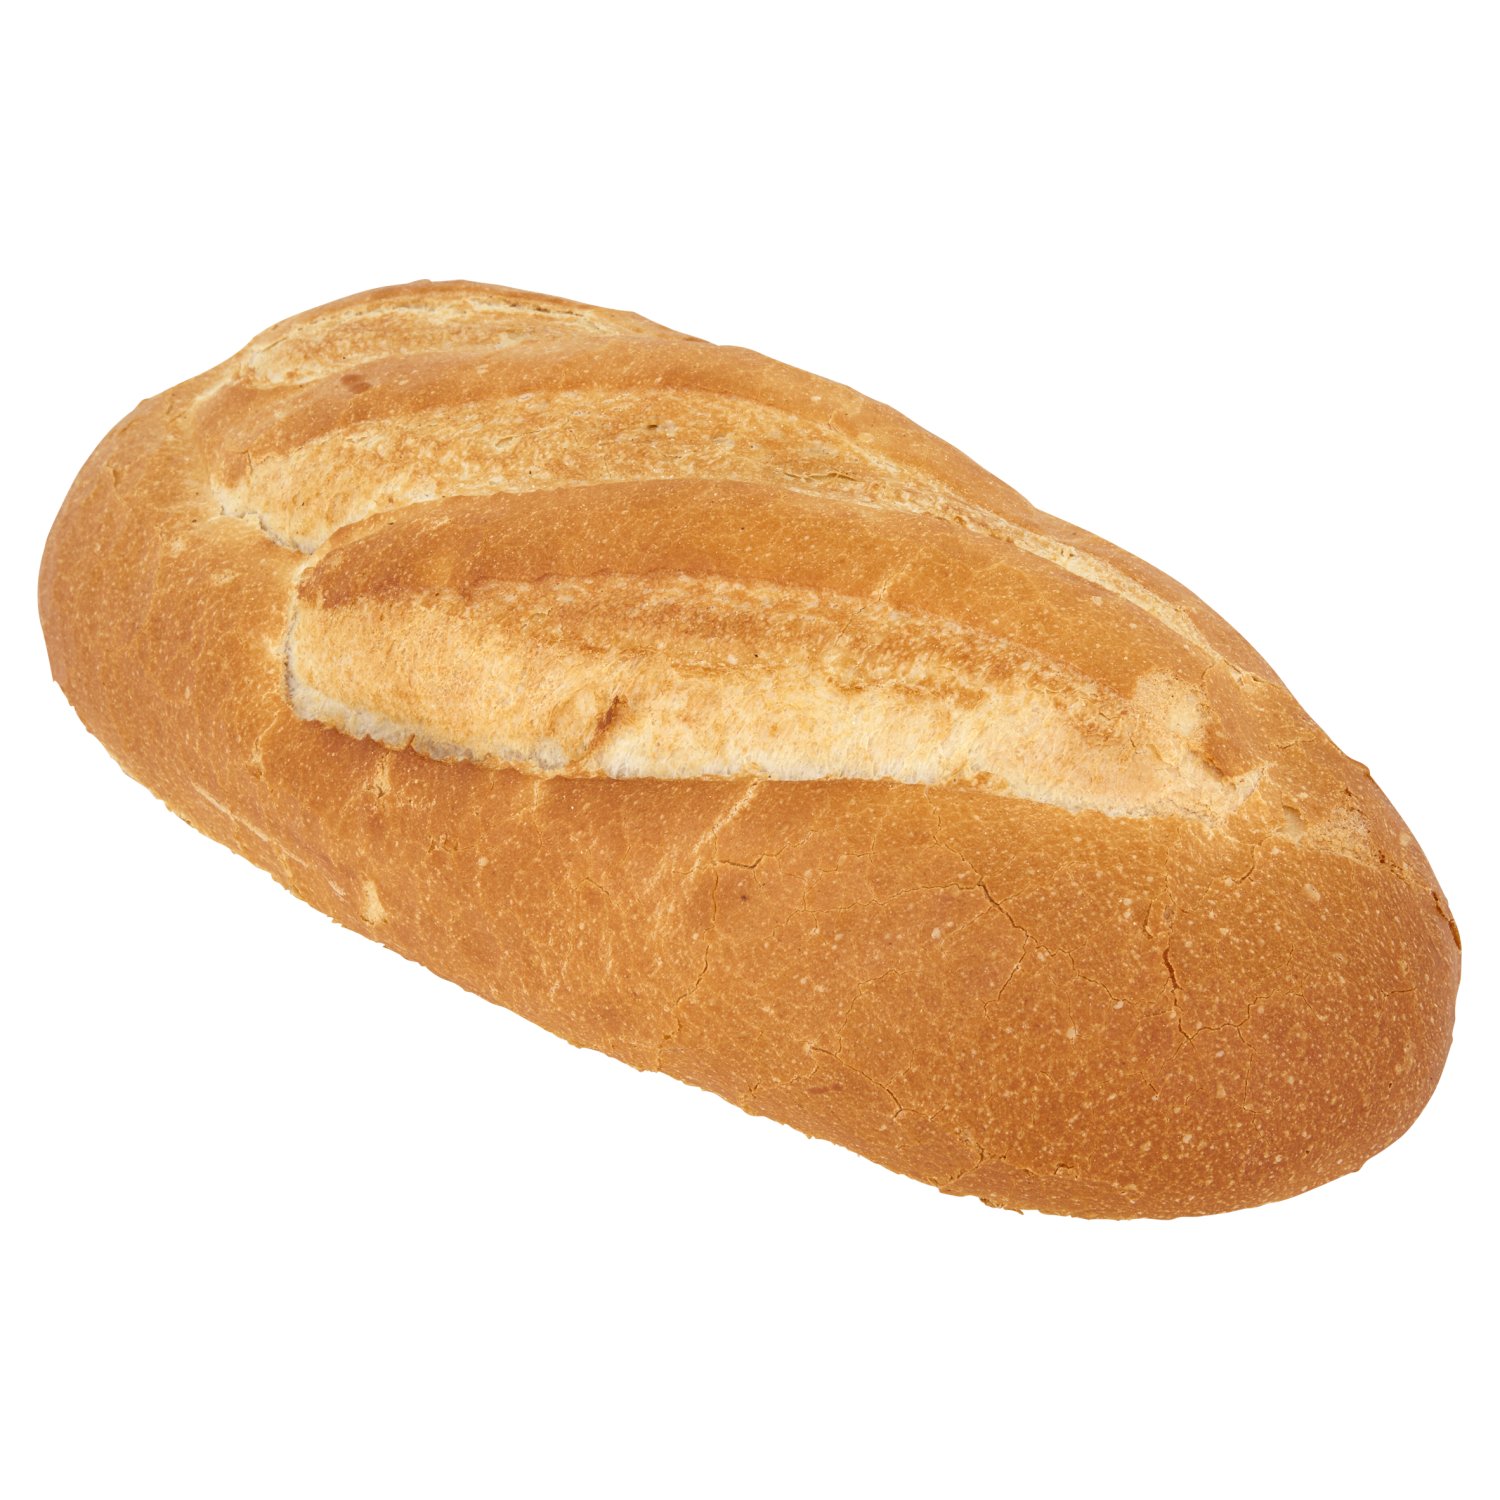 Vienna Loaf